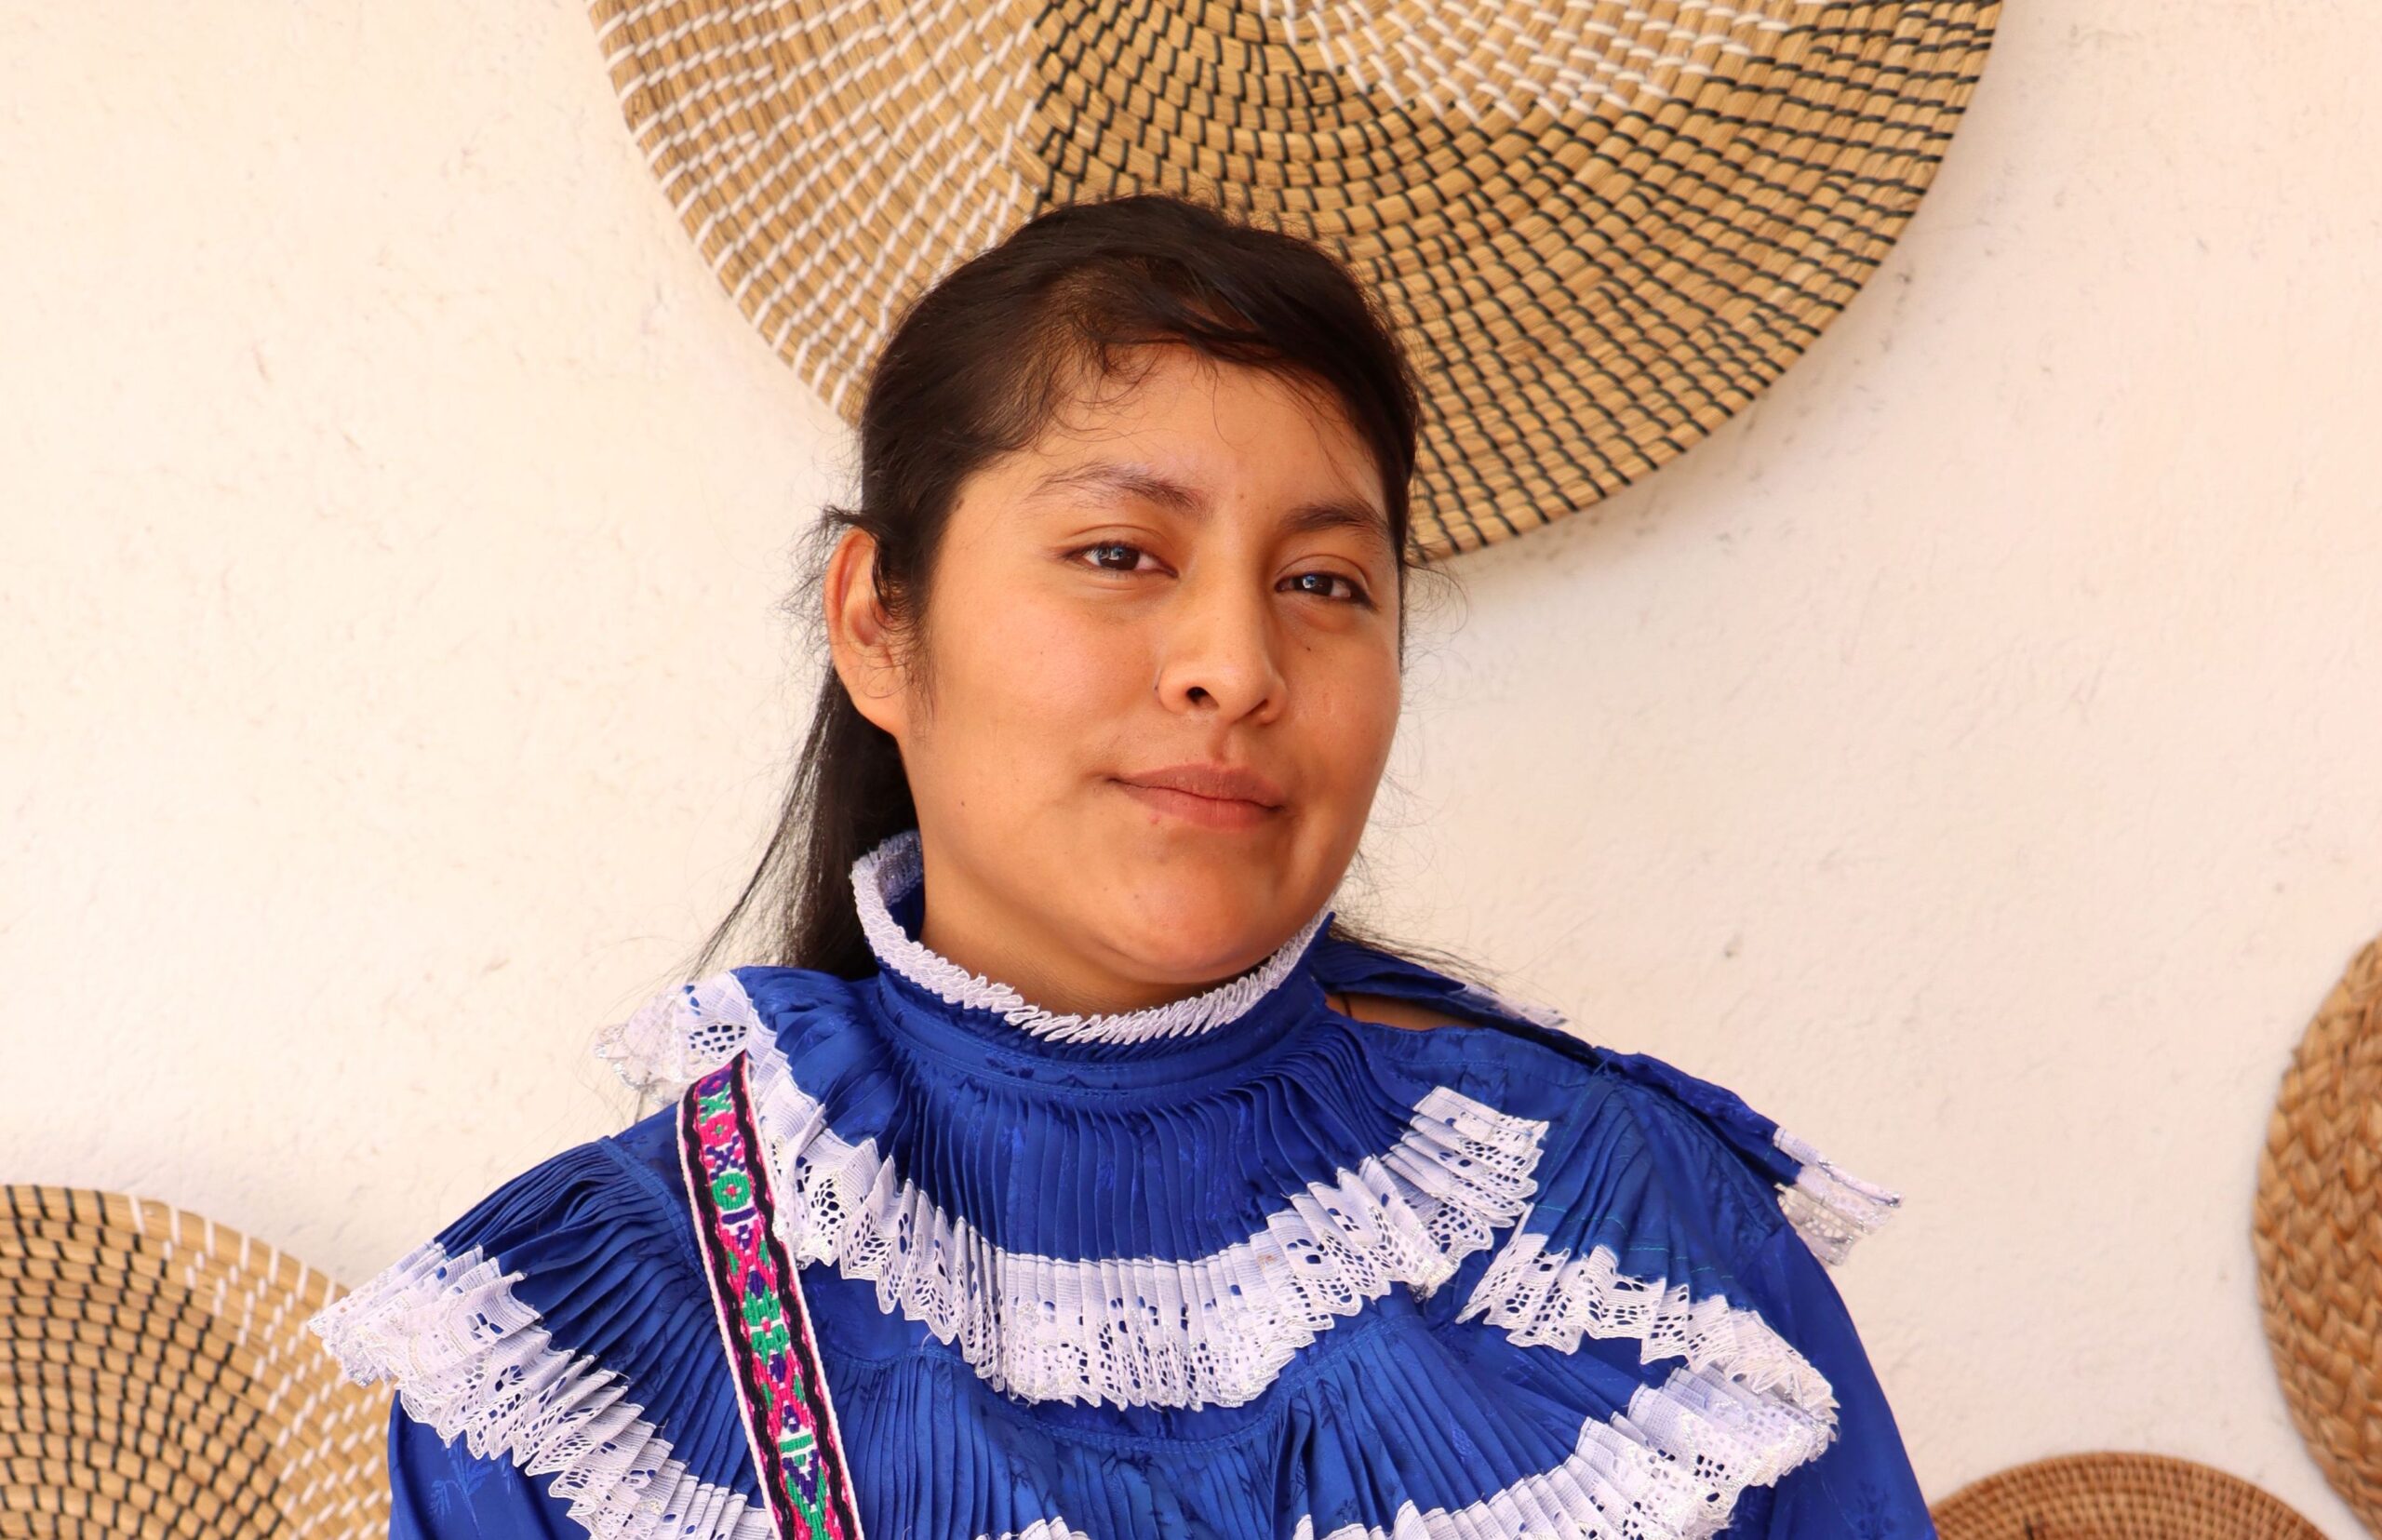 De la comunidad indígena de Querétaro al sueño de libertad: Juliana y el trabajo como liberación (textil)